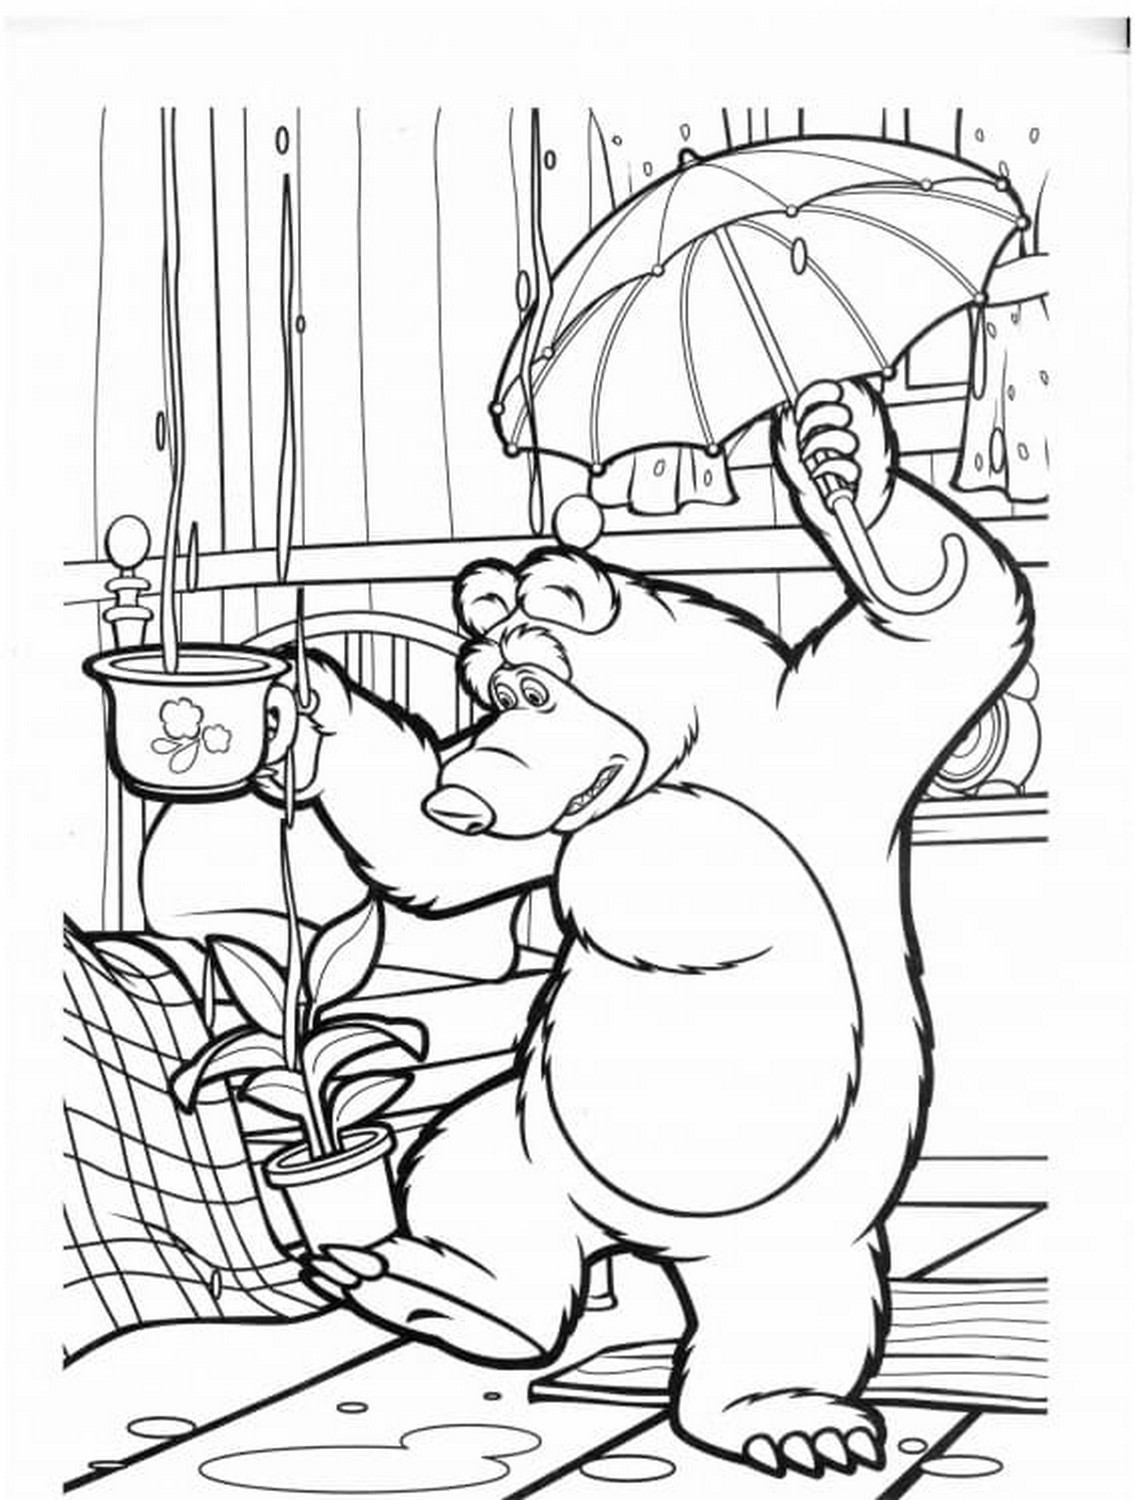 Dibujo 62 de Masha y el oso para imprimir y colorear